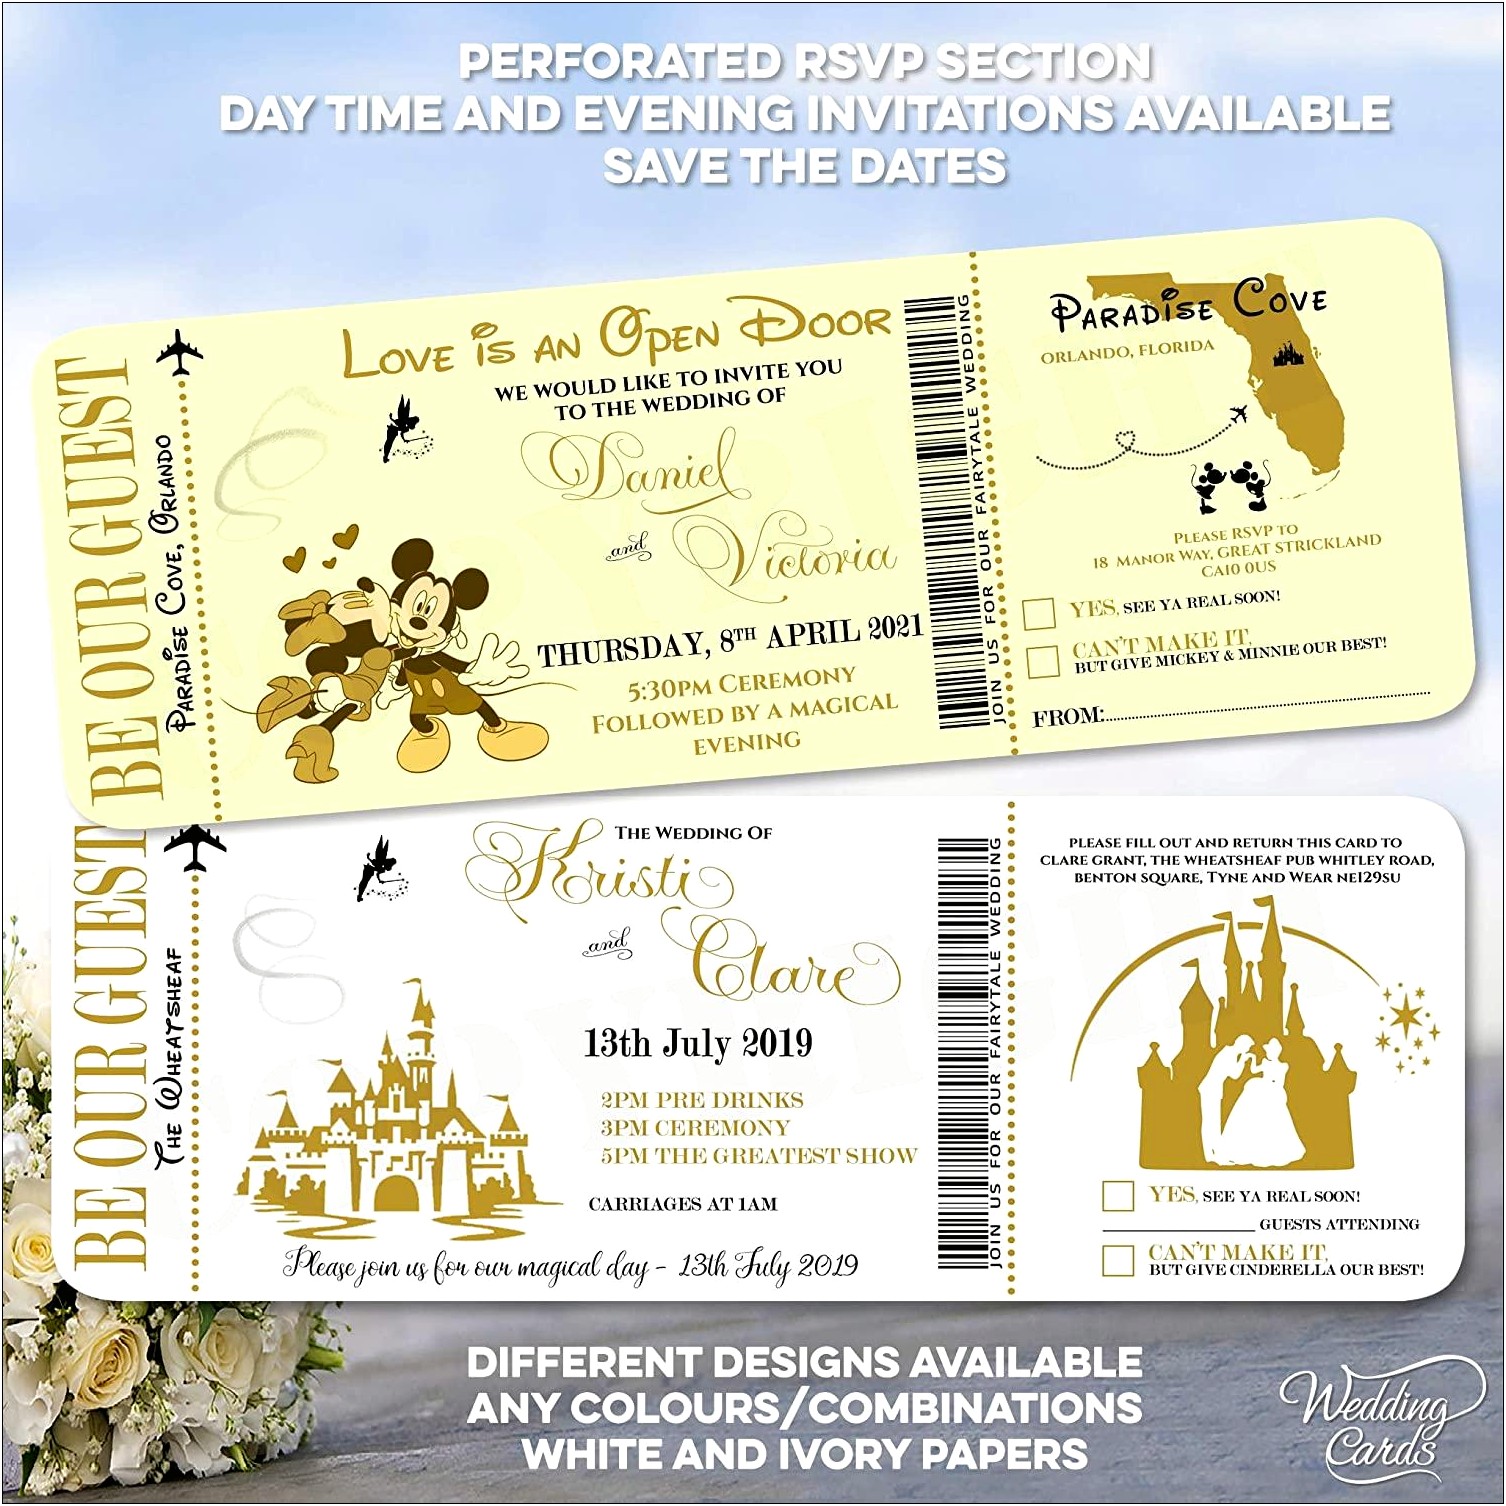 Send Wedding Invite To Mickey And Minnie